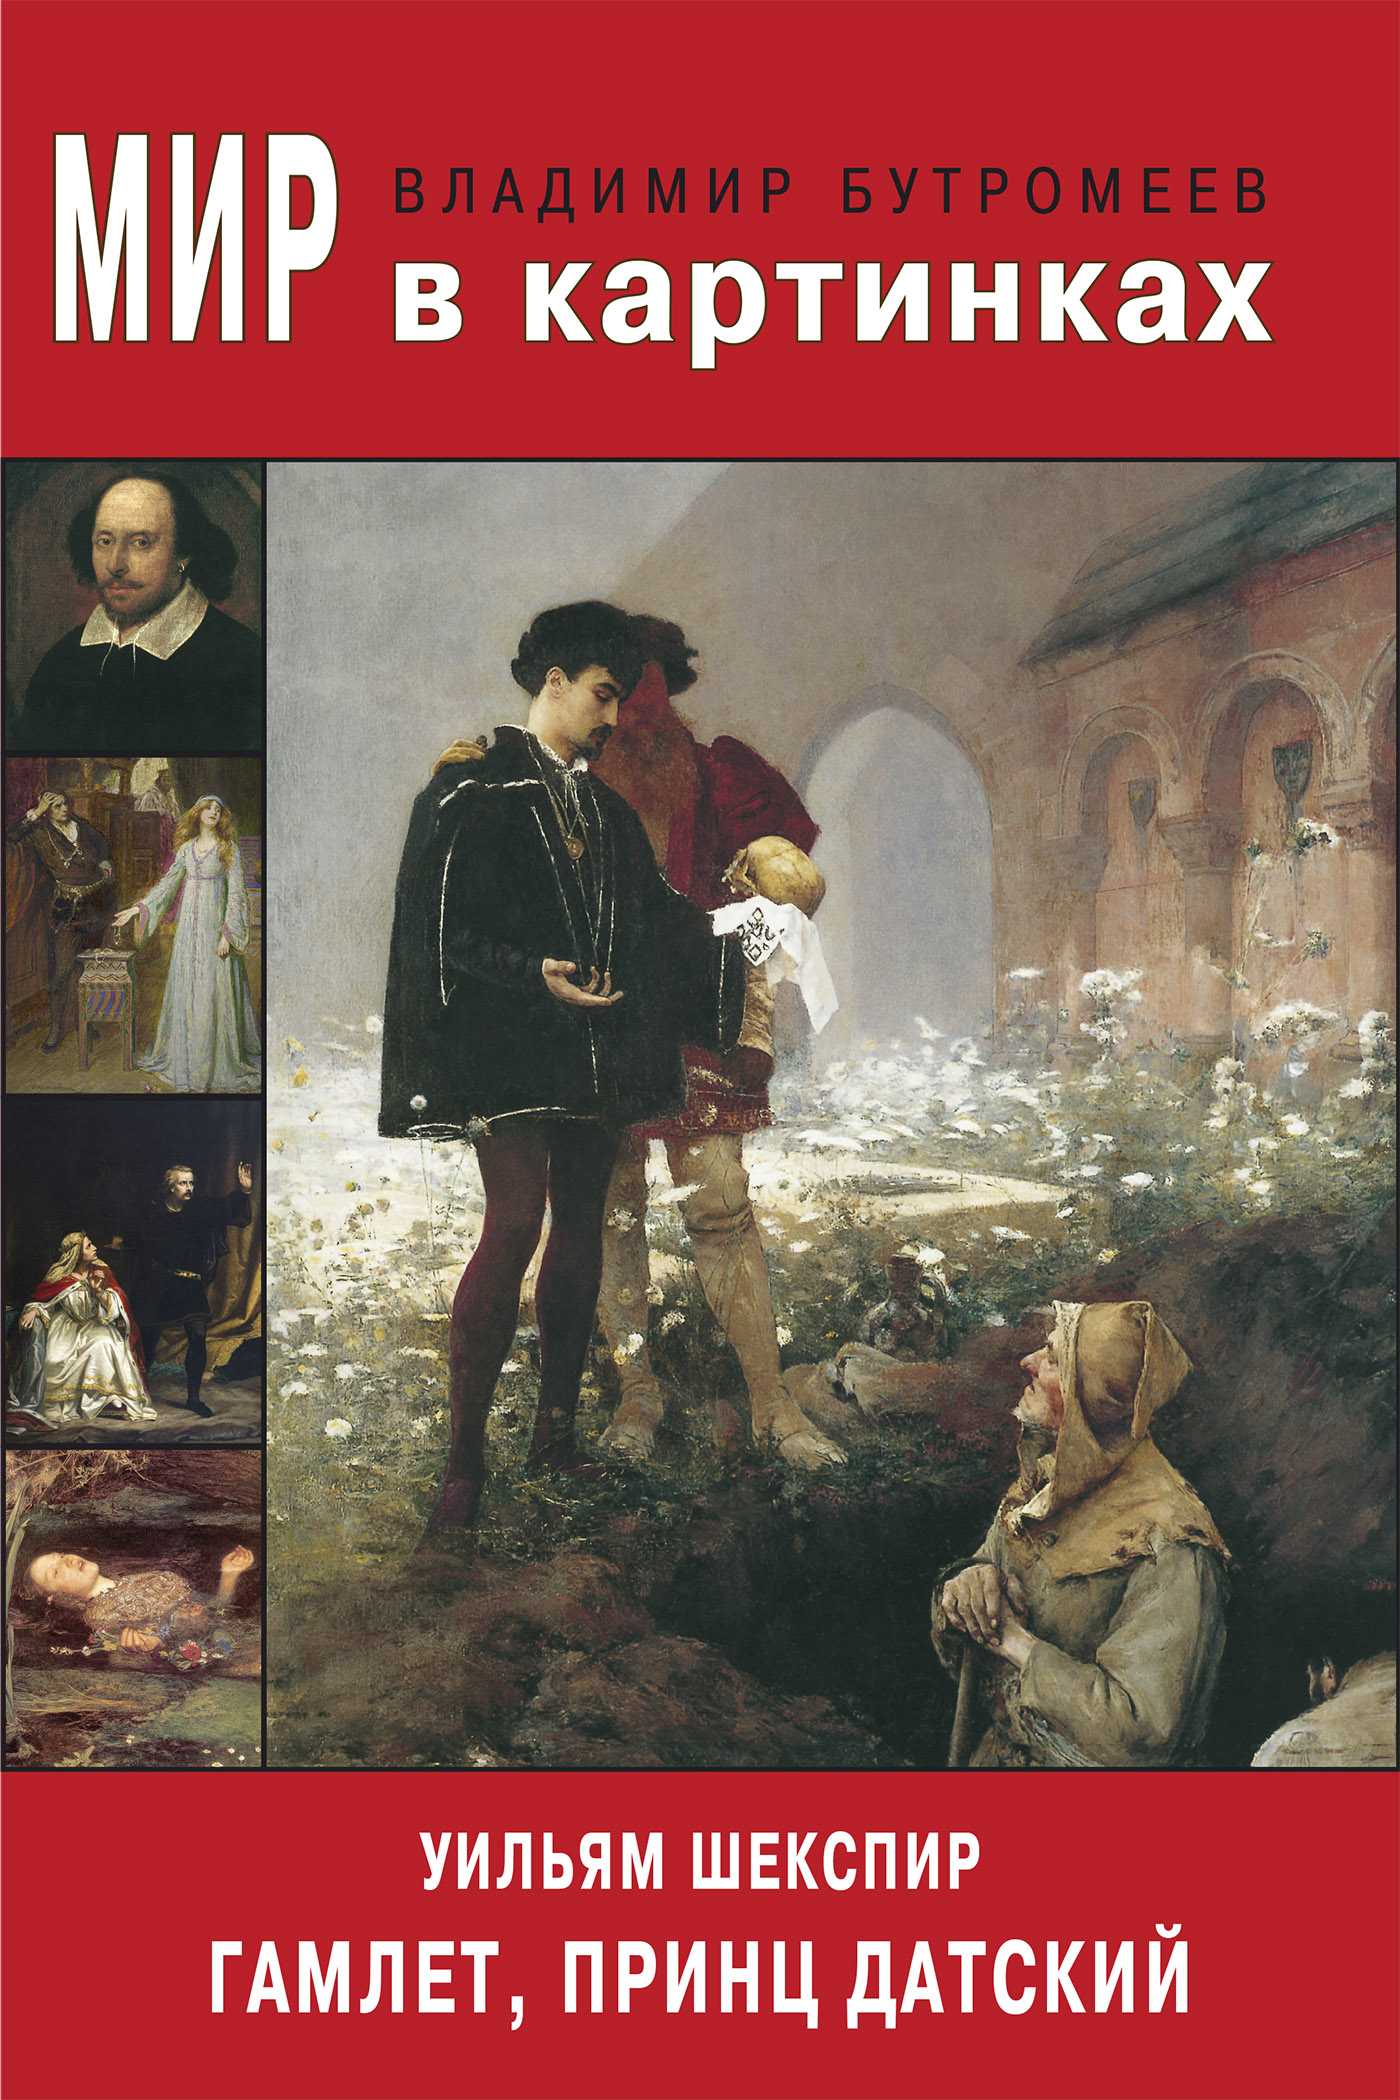 Гамлет, принц датский. акт iv (шекспир) — читать онлайн